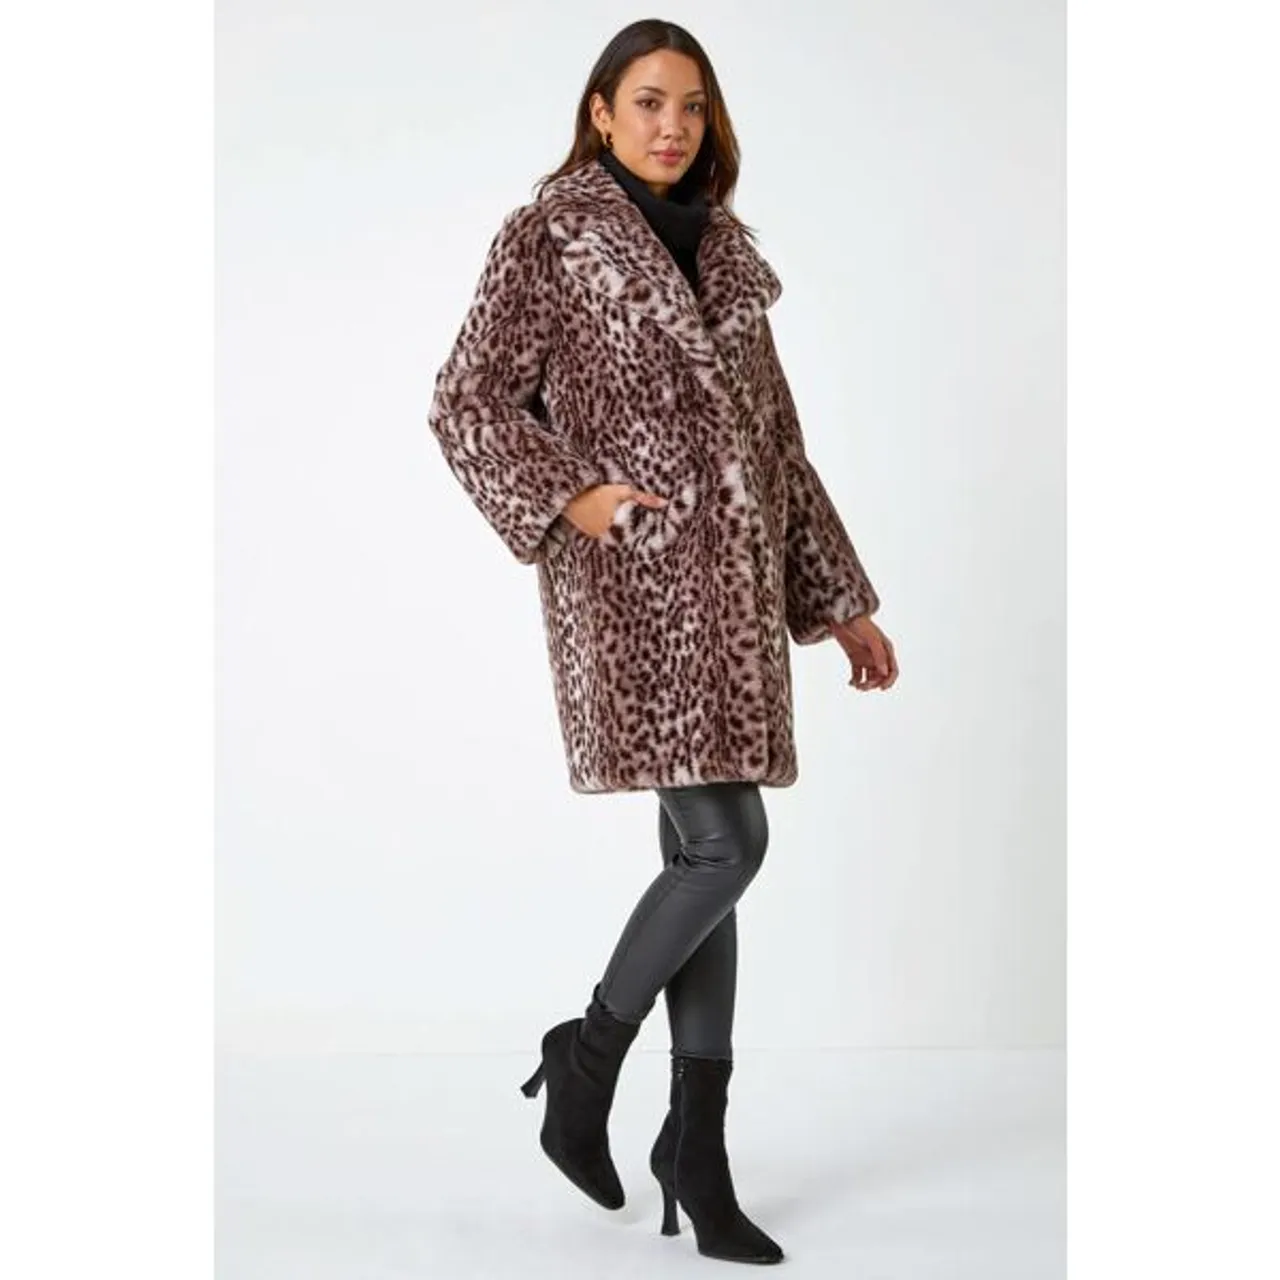 Roman Premium Animal Print Faux Fur Coat in Taupe 12 female